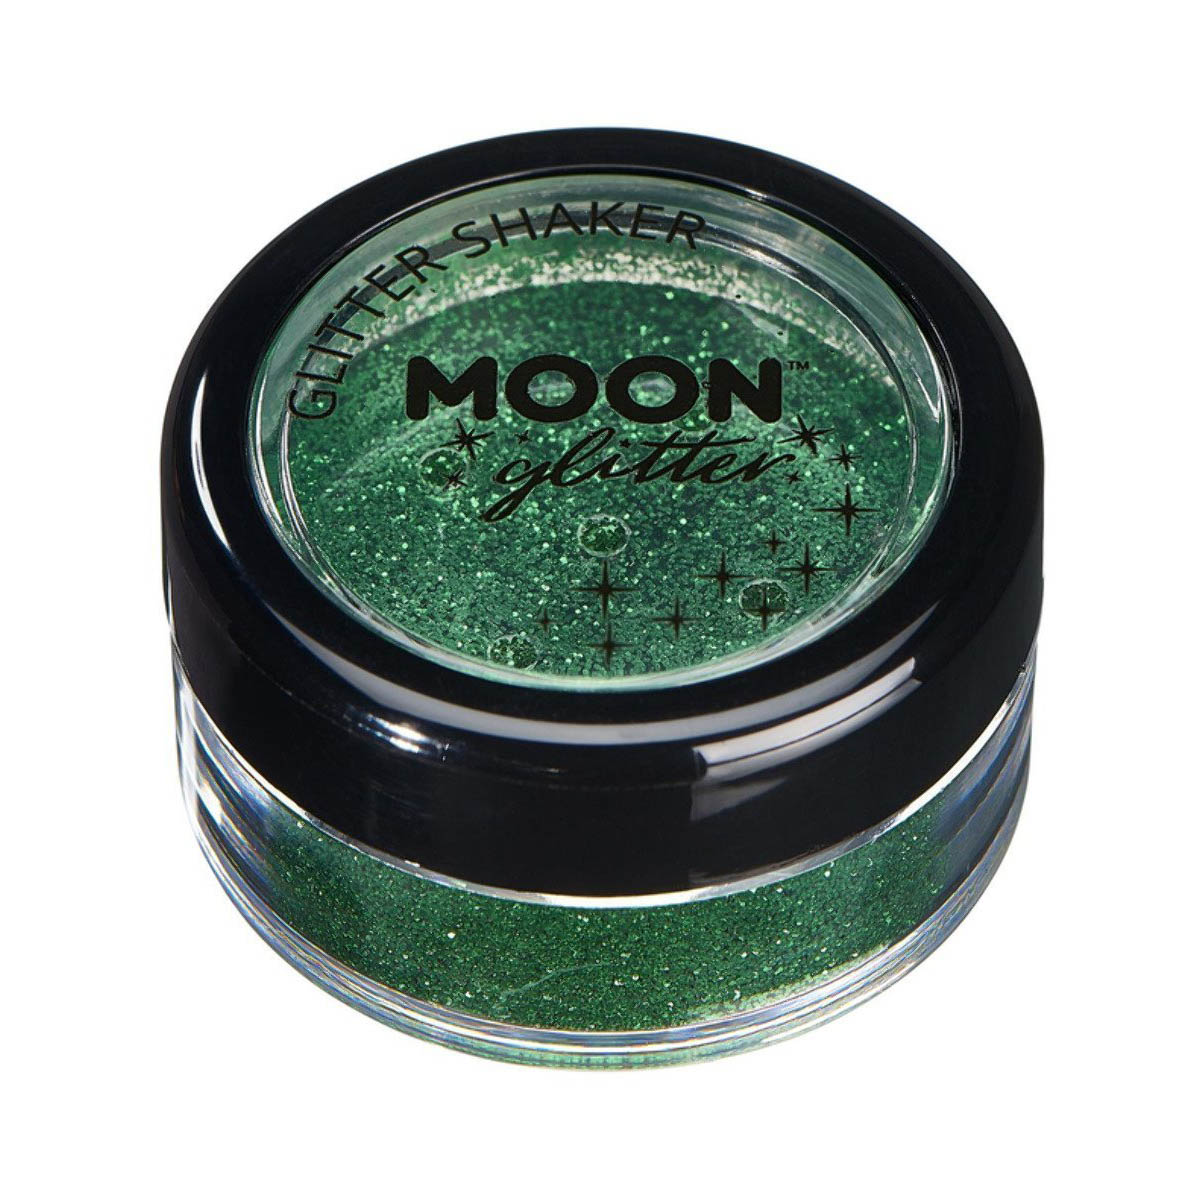 Moon kroppsglitter i burk, finkornigt 5g Grön